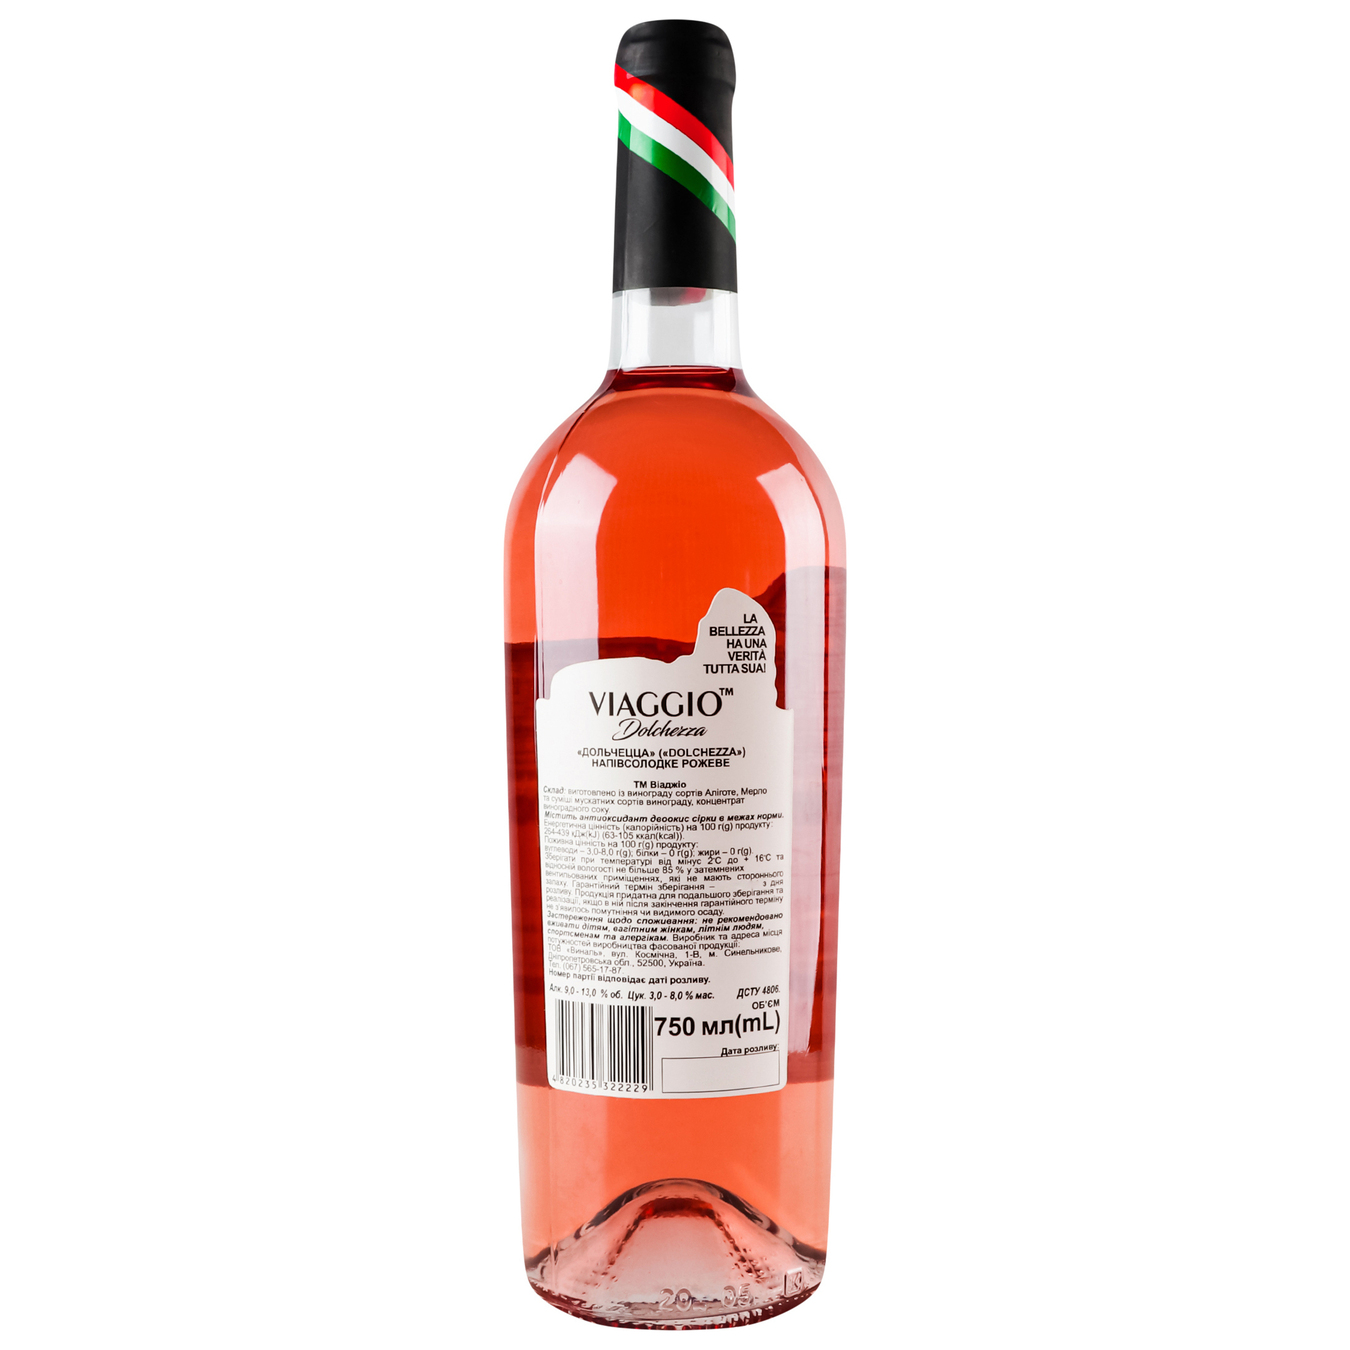 Viaggioi Dolchezza pink semi-sweet wine 9.5-14% 0.75 l 4